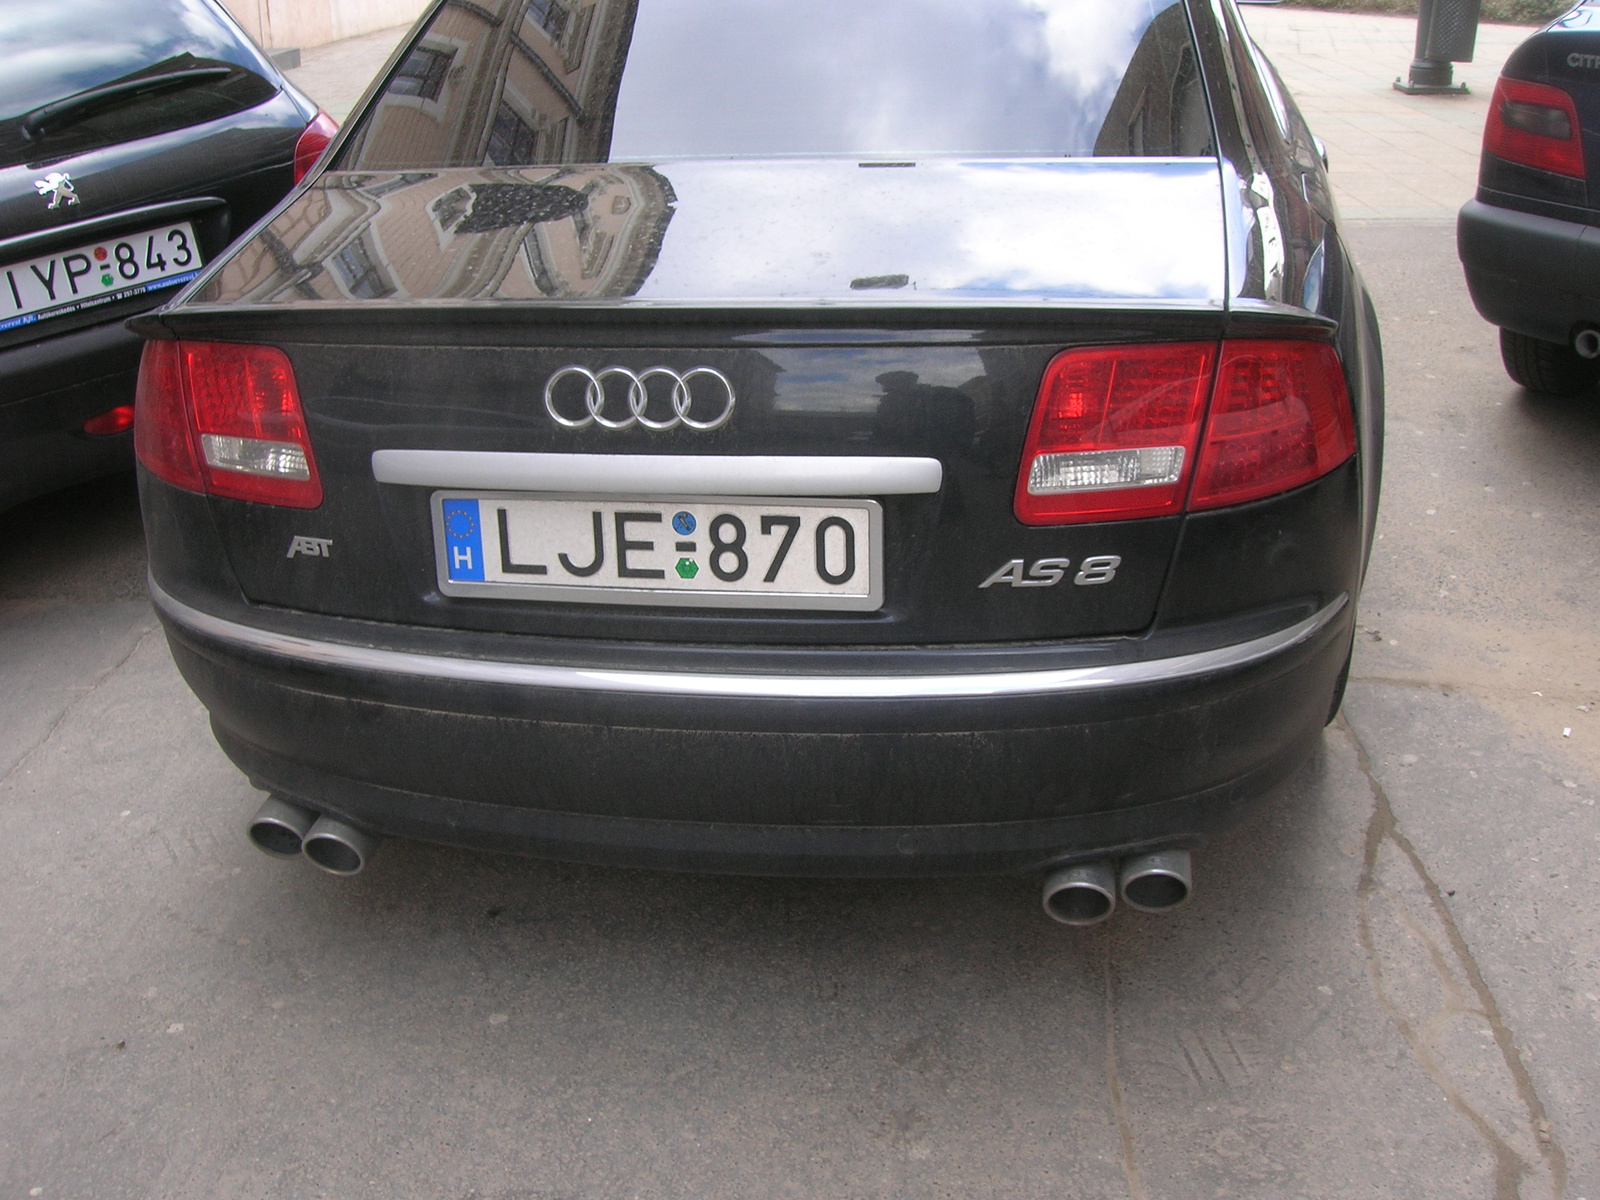 Audi AS8